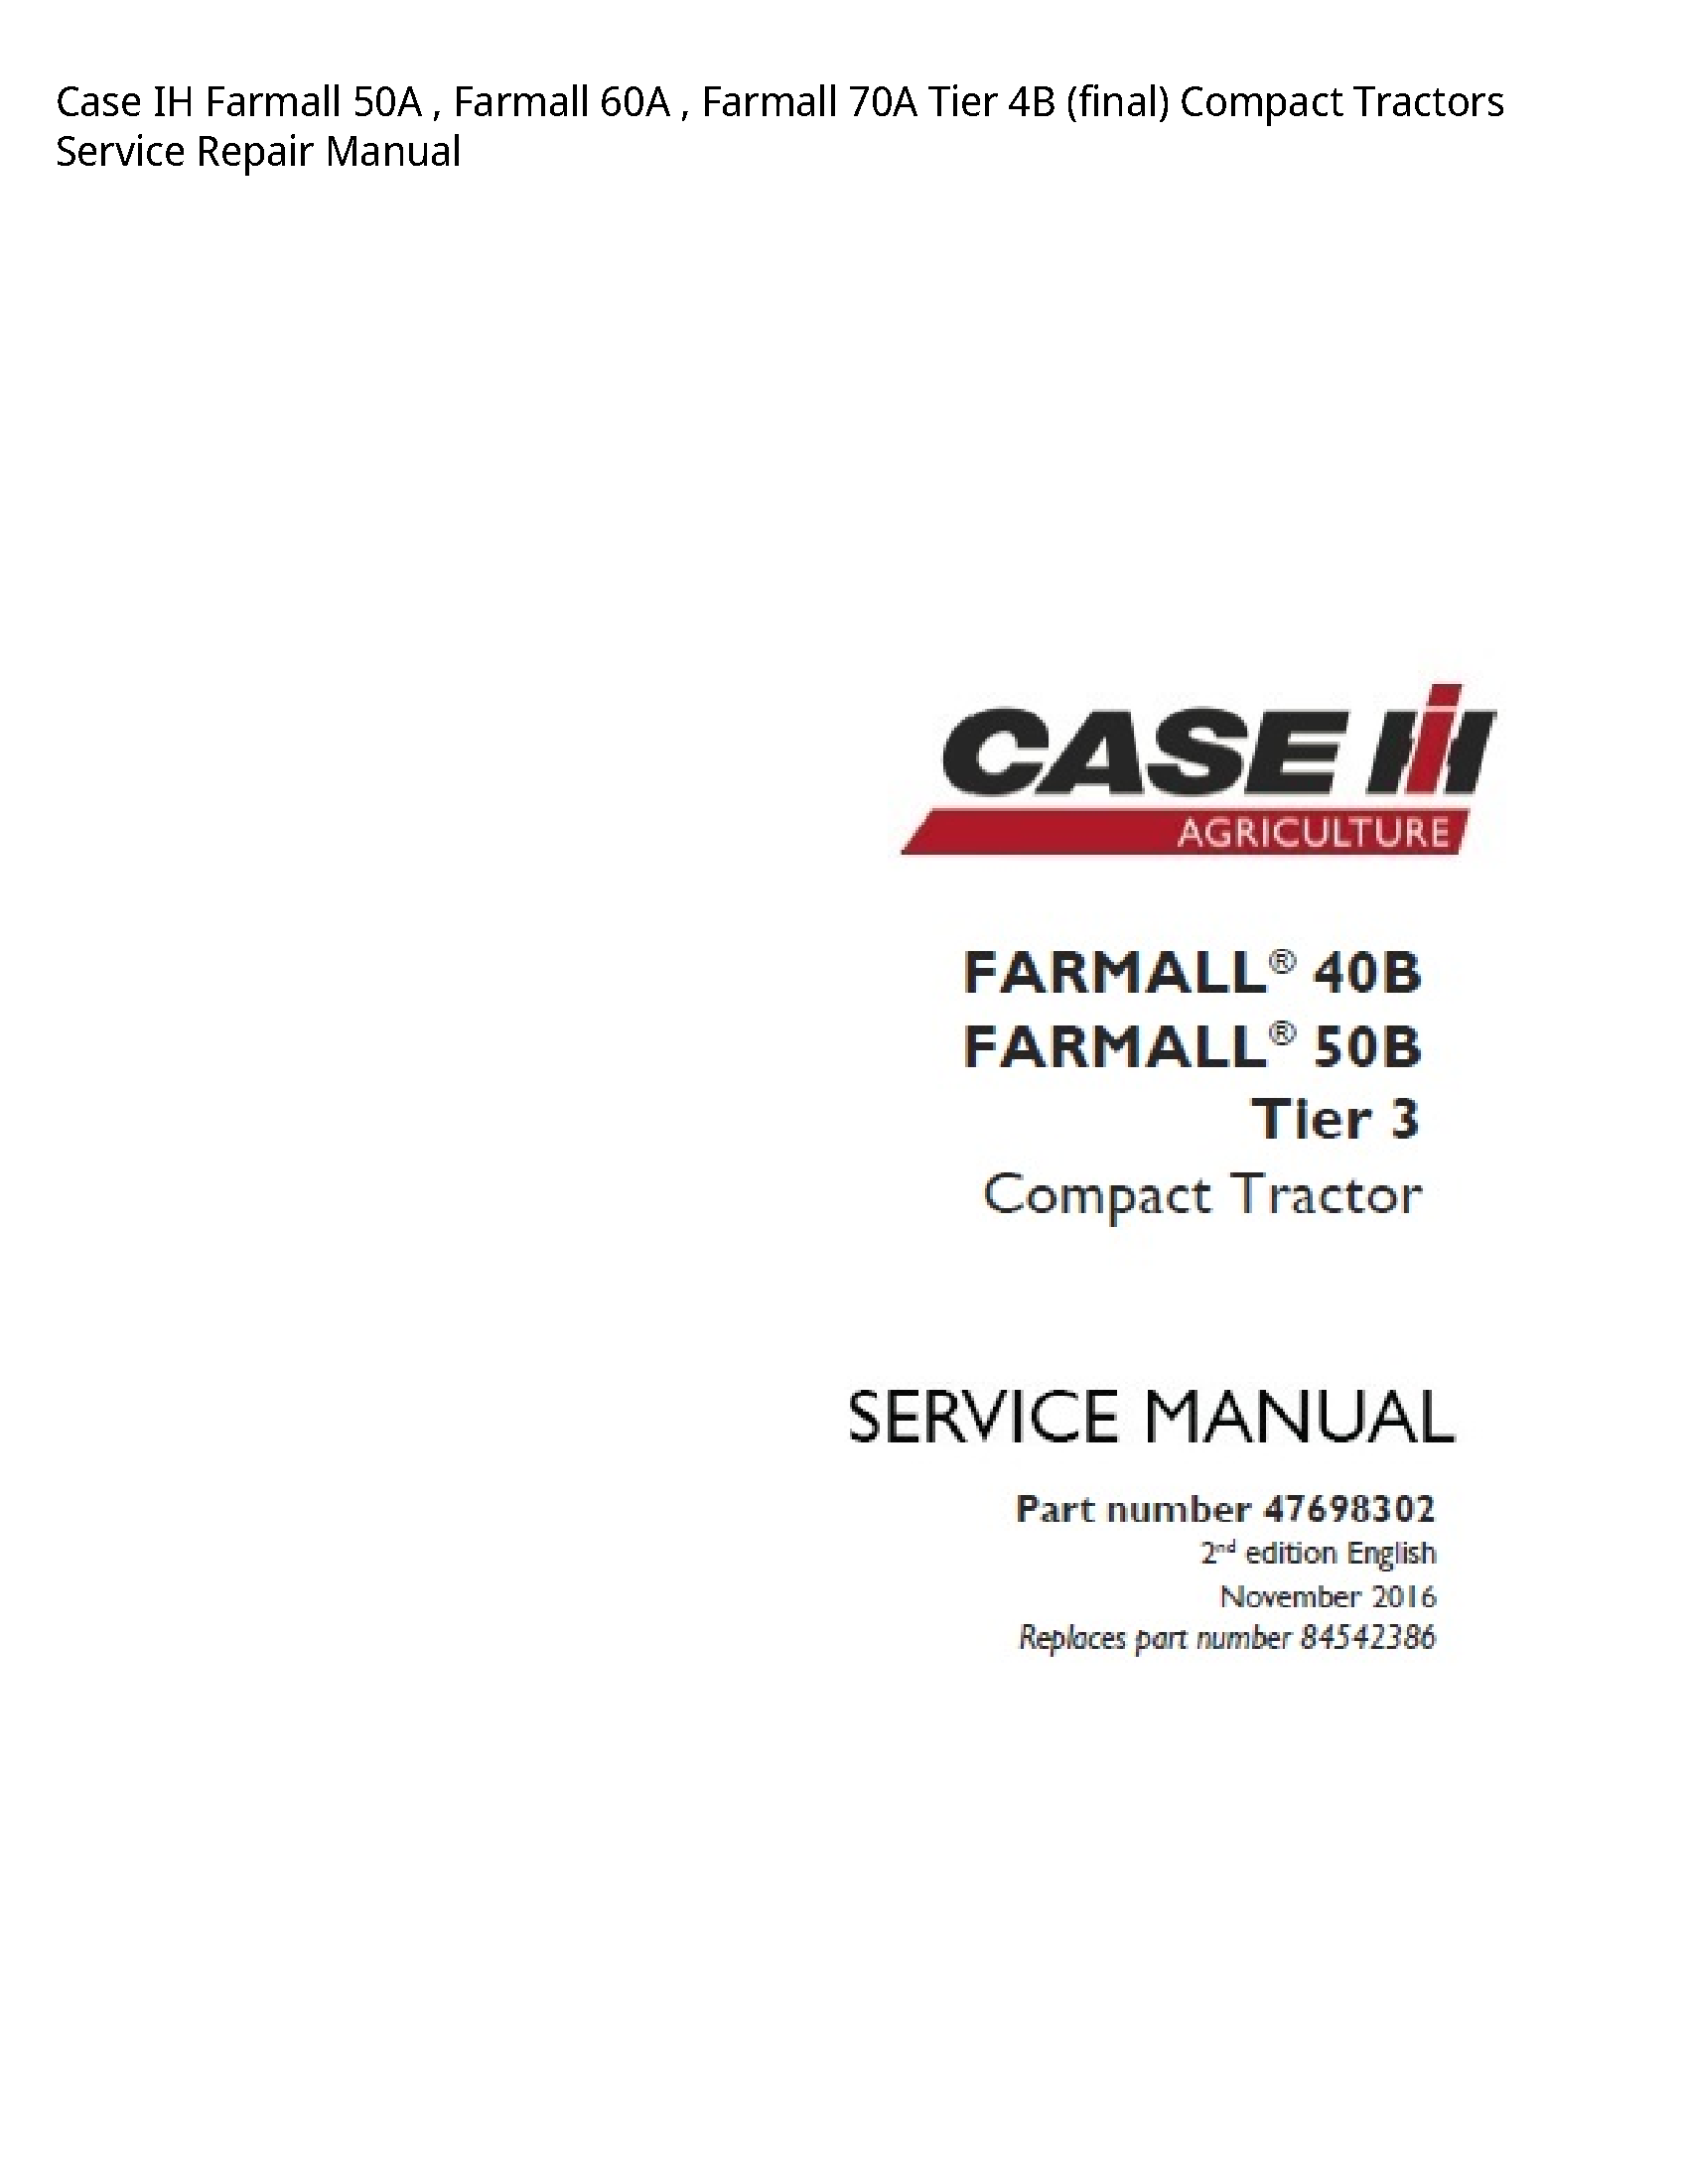 Case/Case IH 50A IH Farmall Farmall Farmall Tier (final) Compact Tractors manual